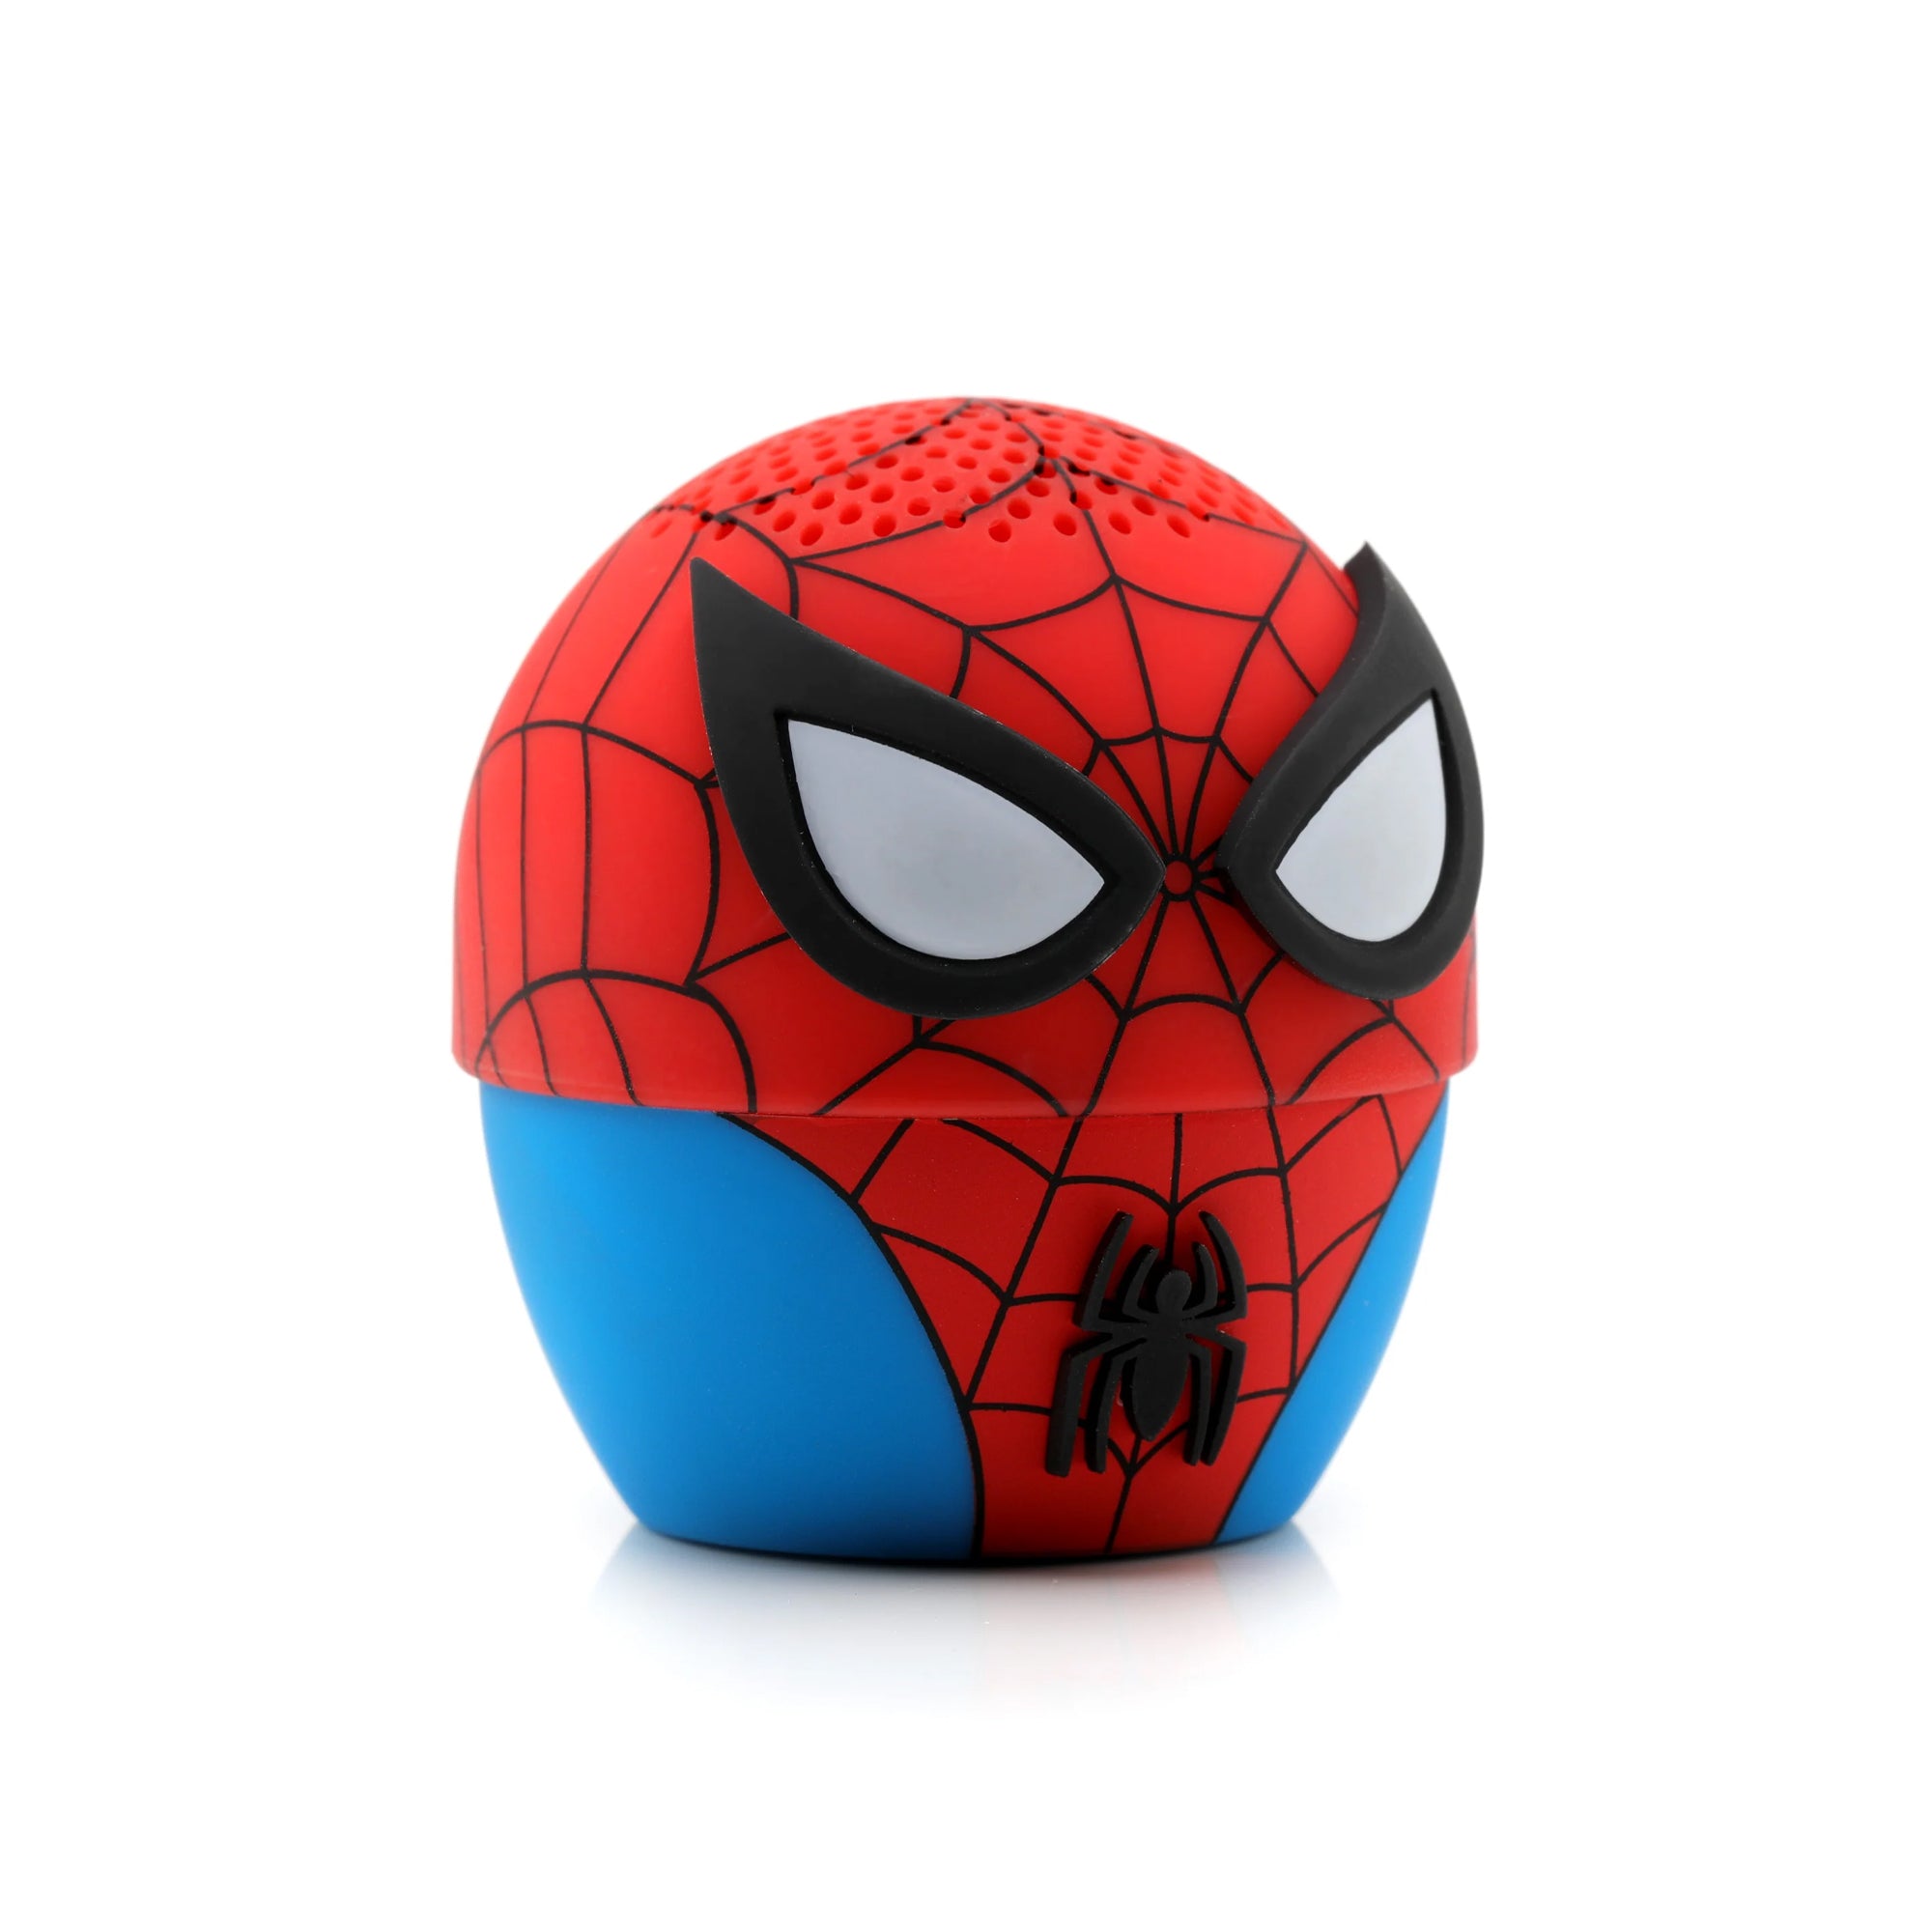 Marvel The Amazing Spider-Man Wireless Bluetooth Speaker